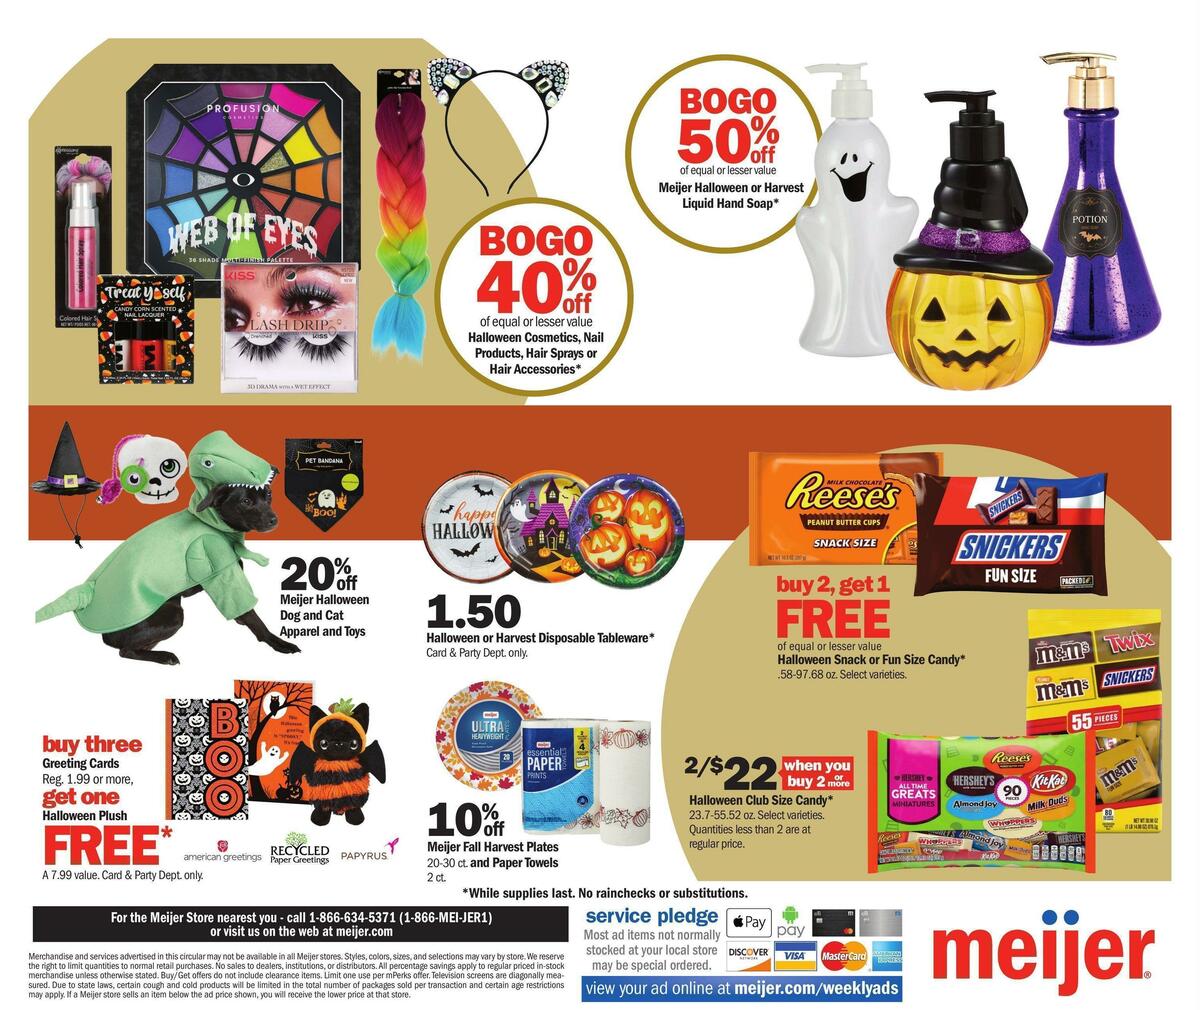 Meijer Halloween Weekly Ad from October 2